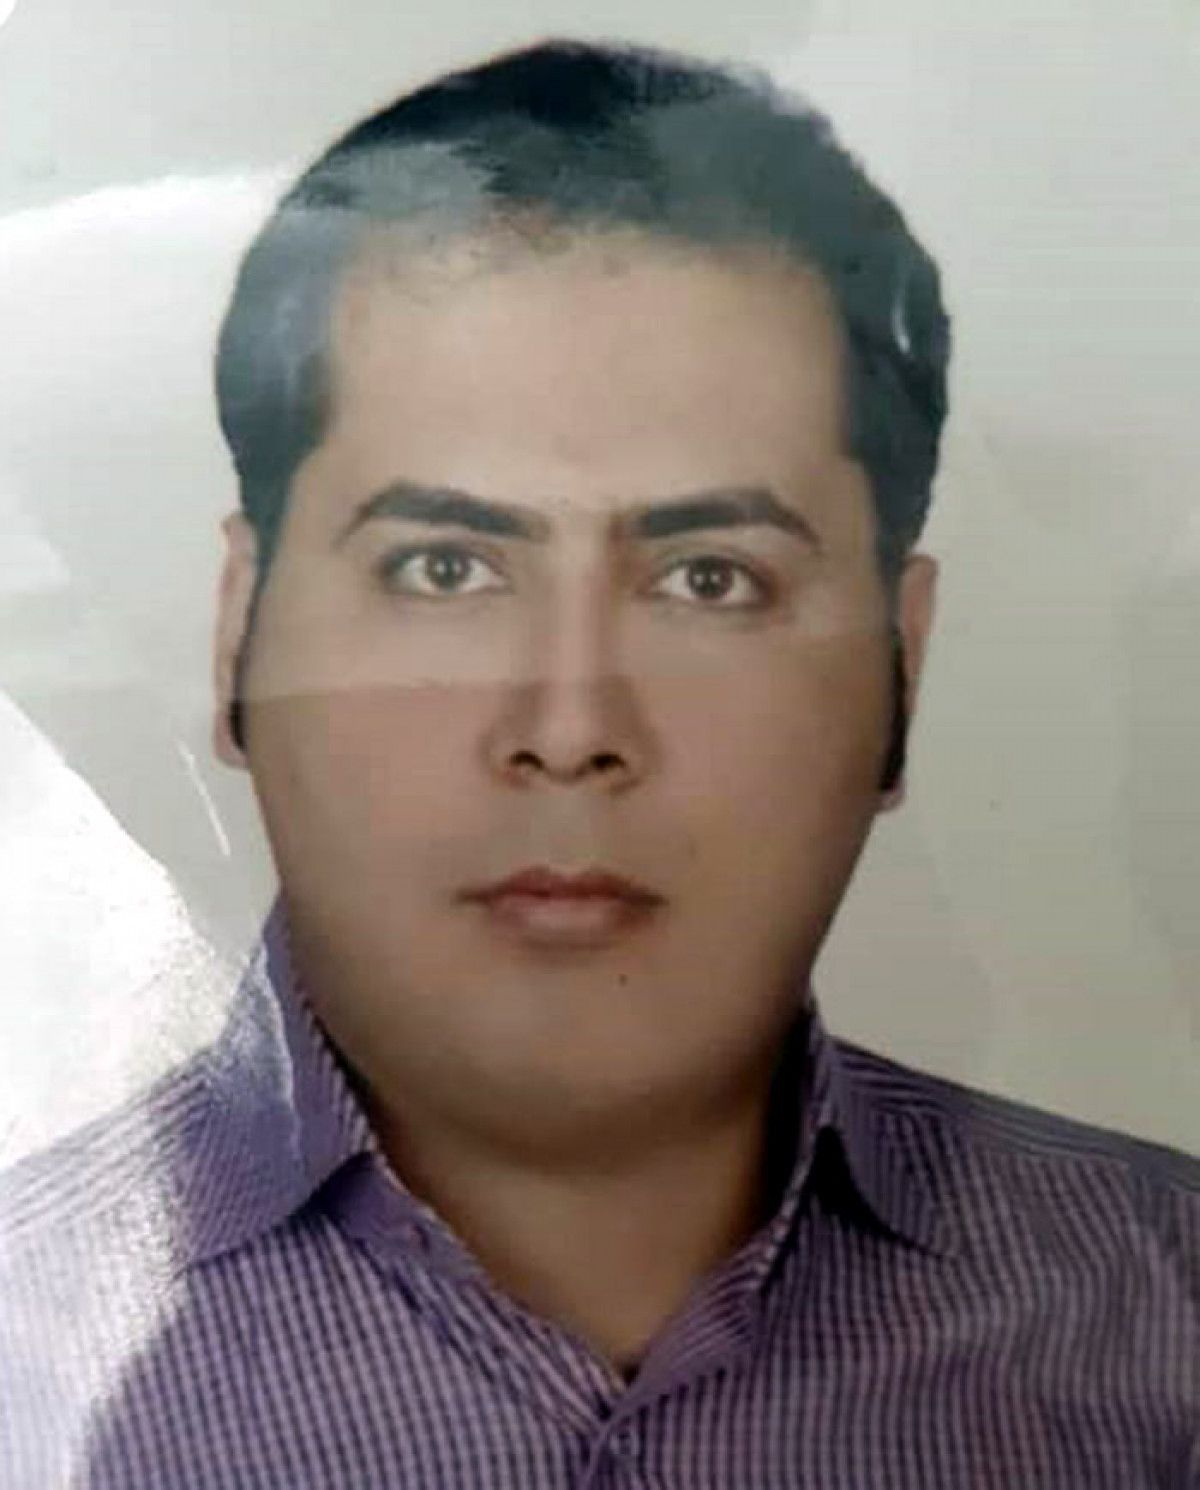 Denizli de eski eşini darbeden adam kızını İran a kaçırmaya çalıştı #5